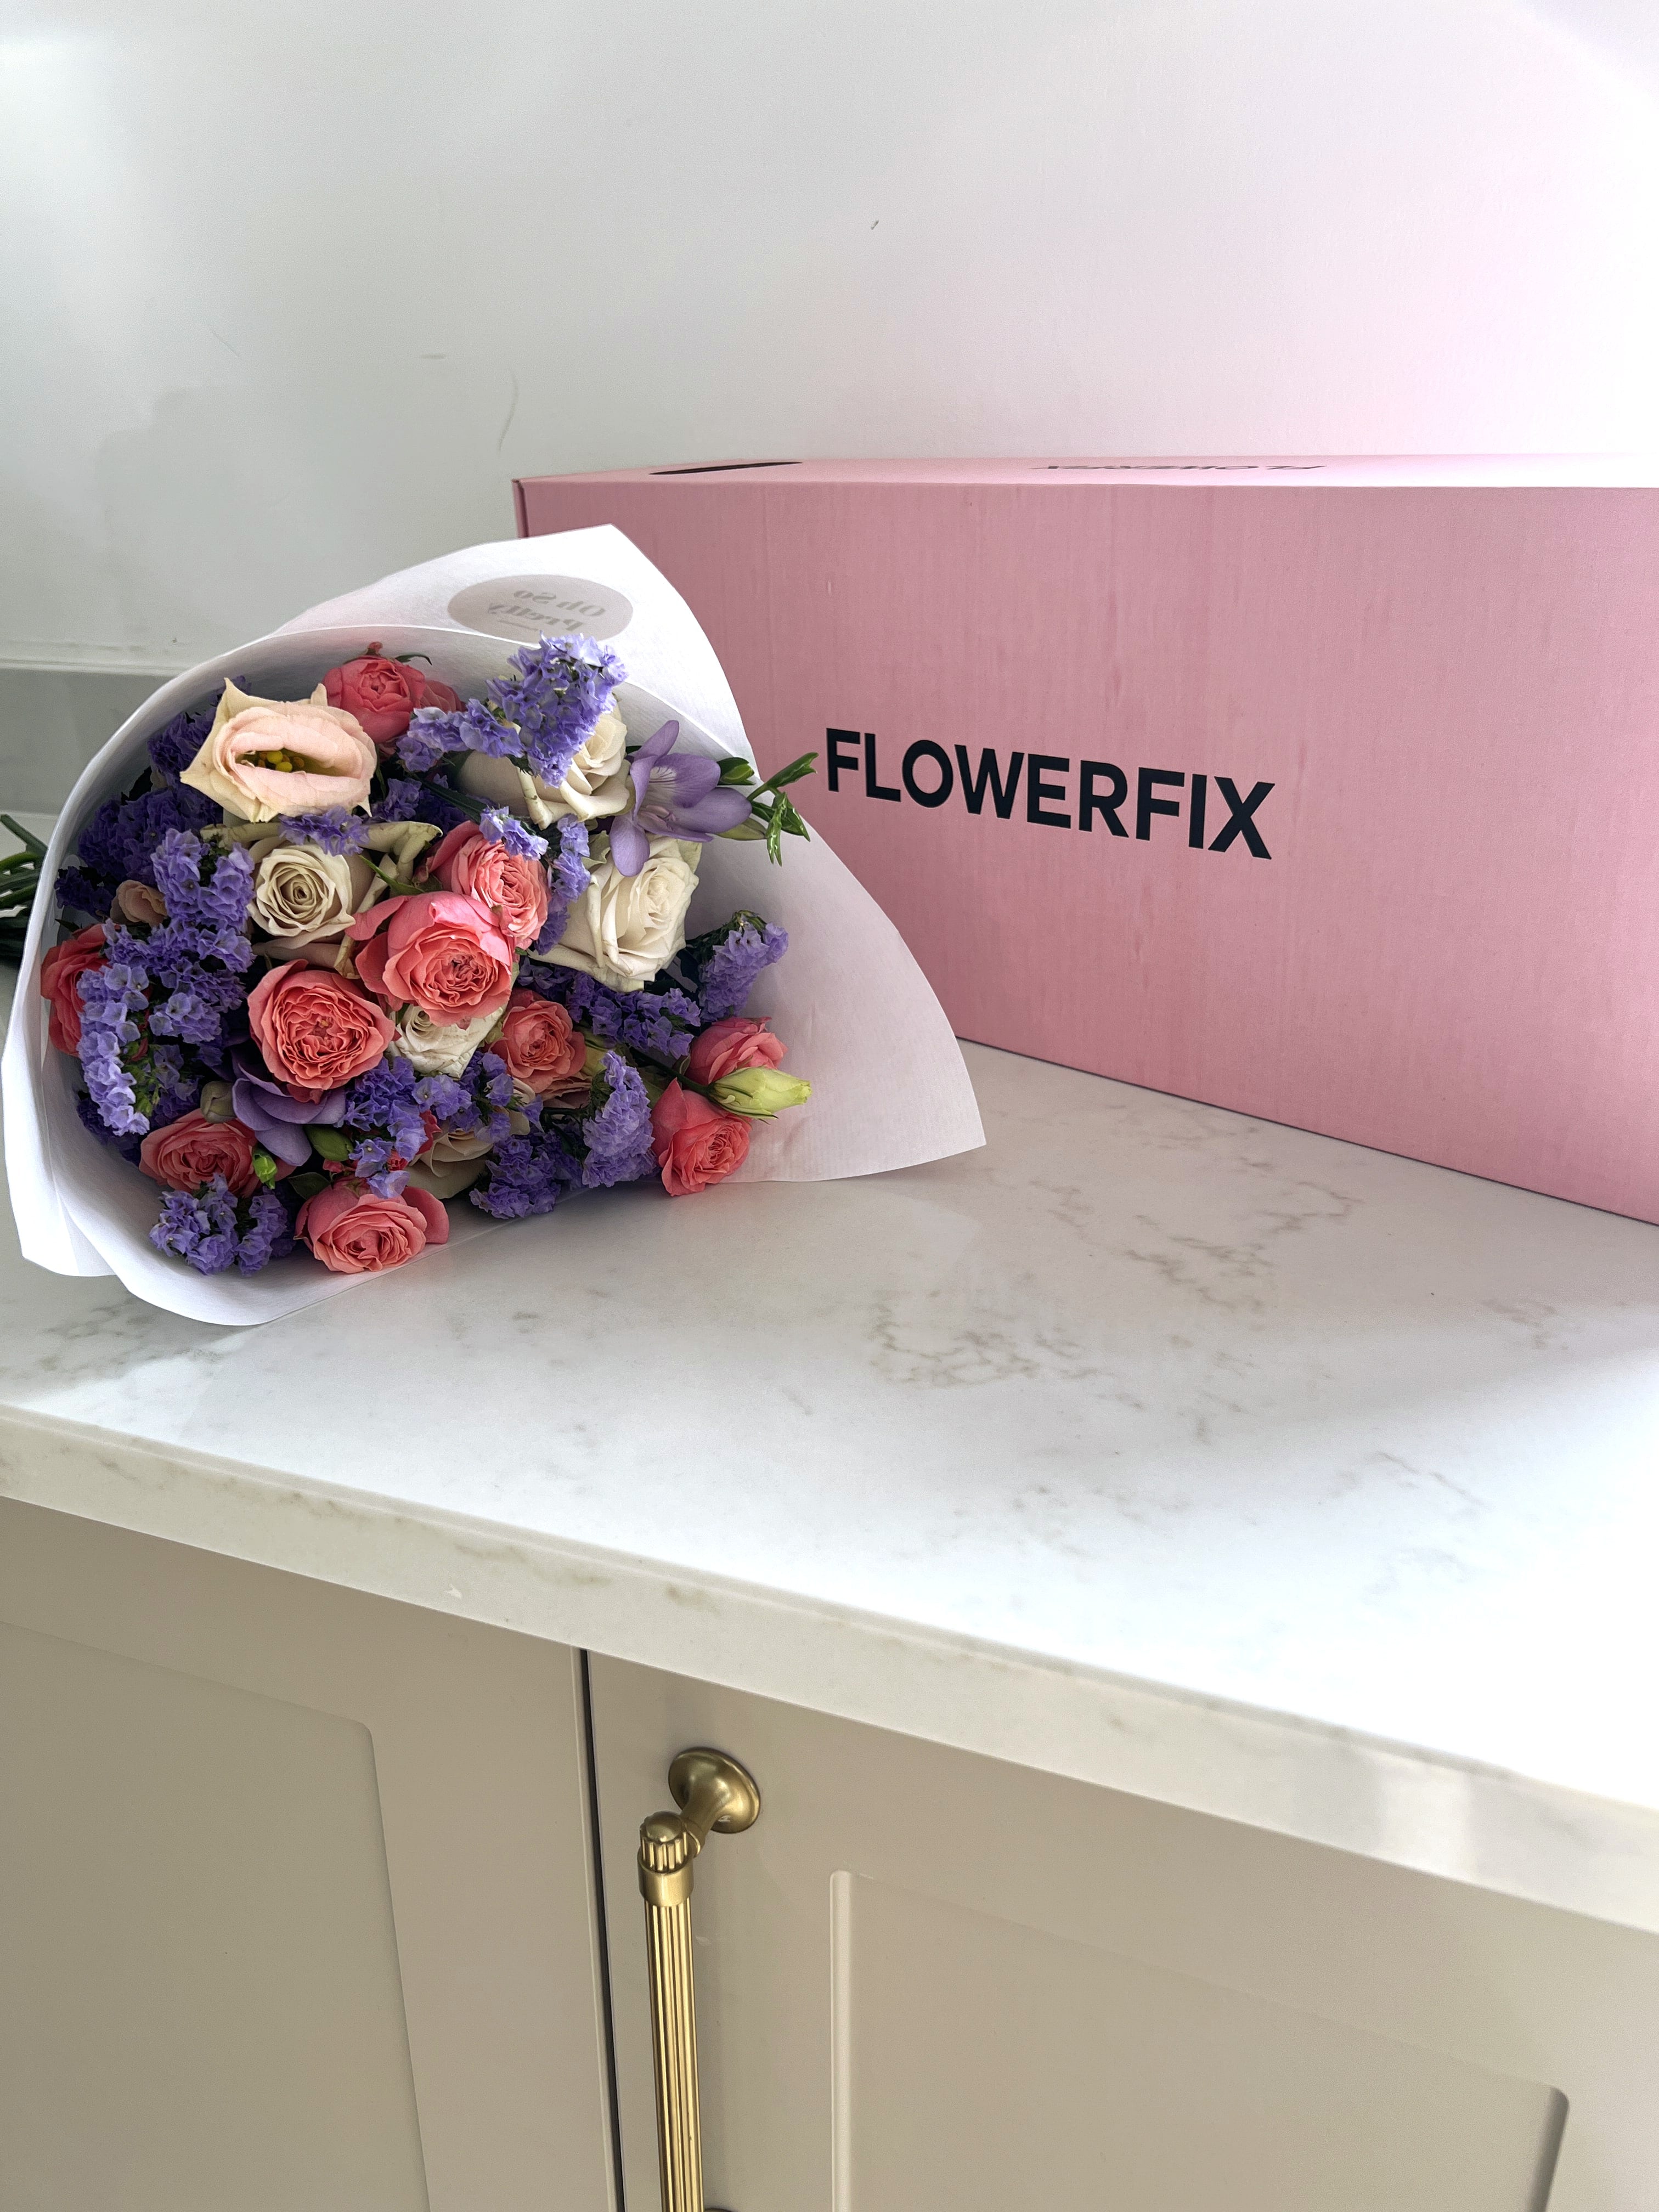 Full of Life Bouquet - FLOWERFIX